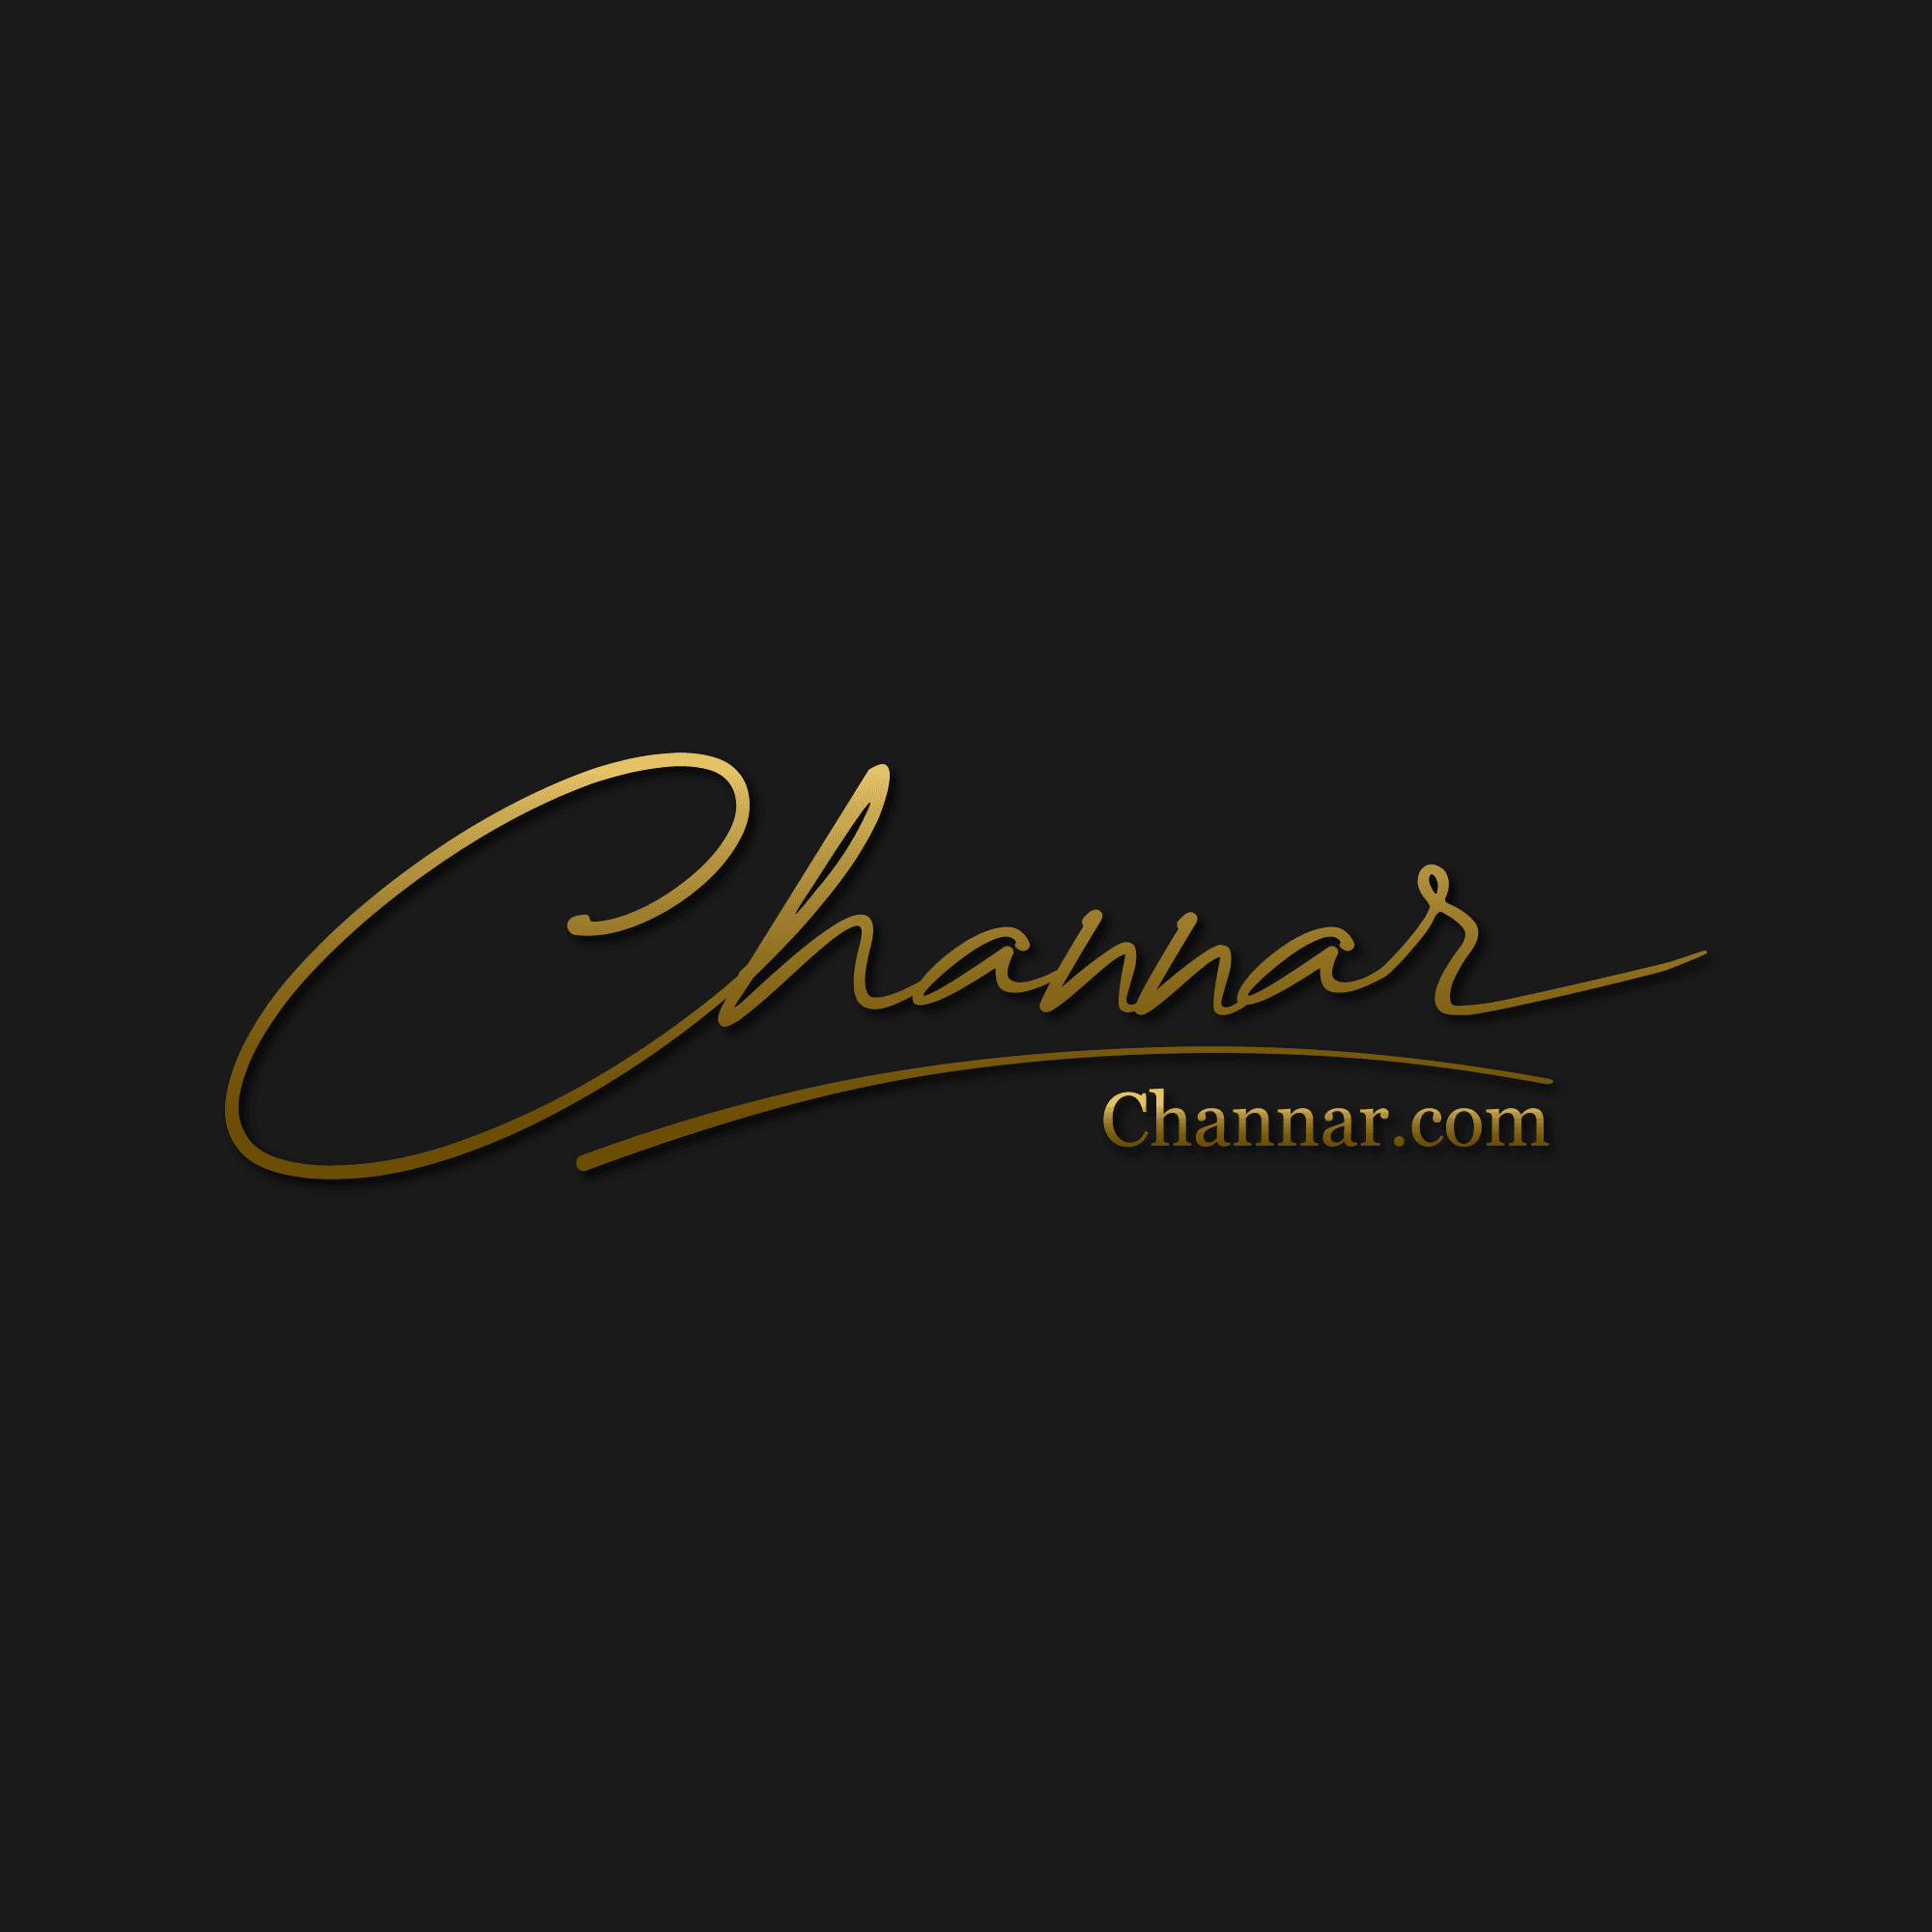 Channar